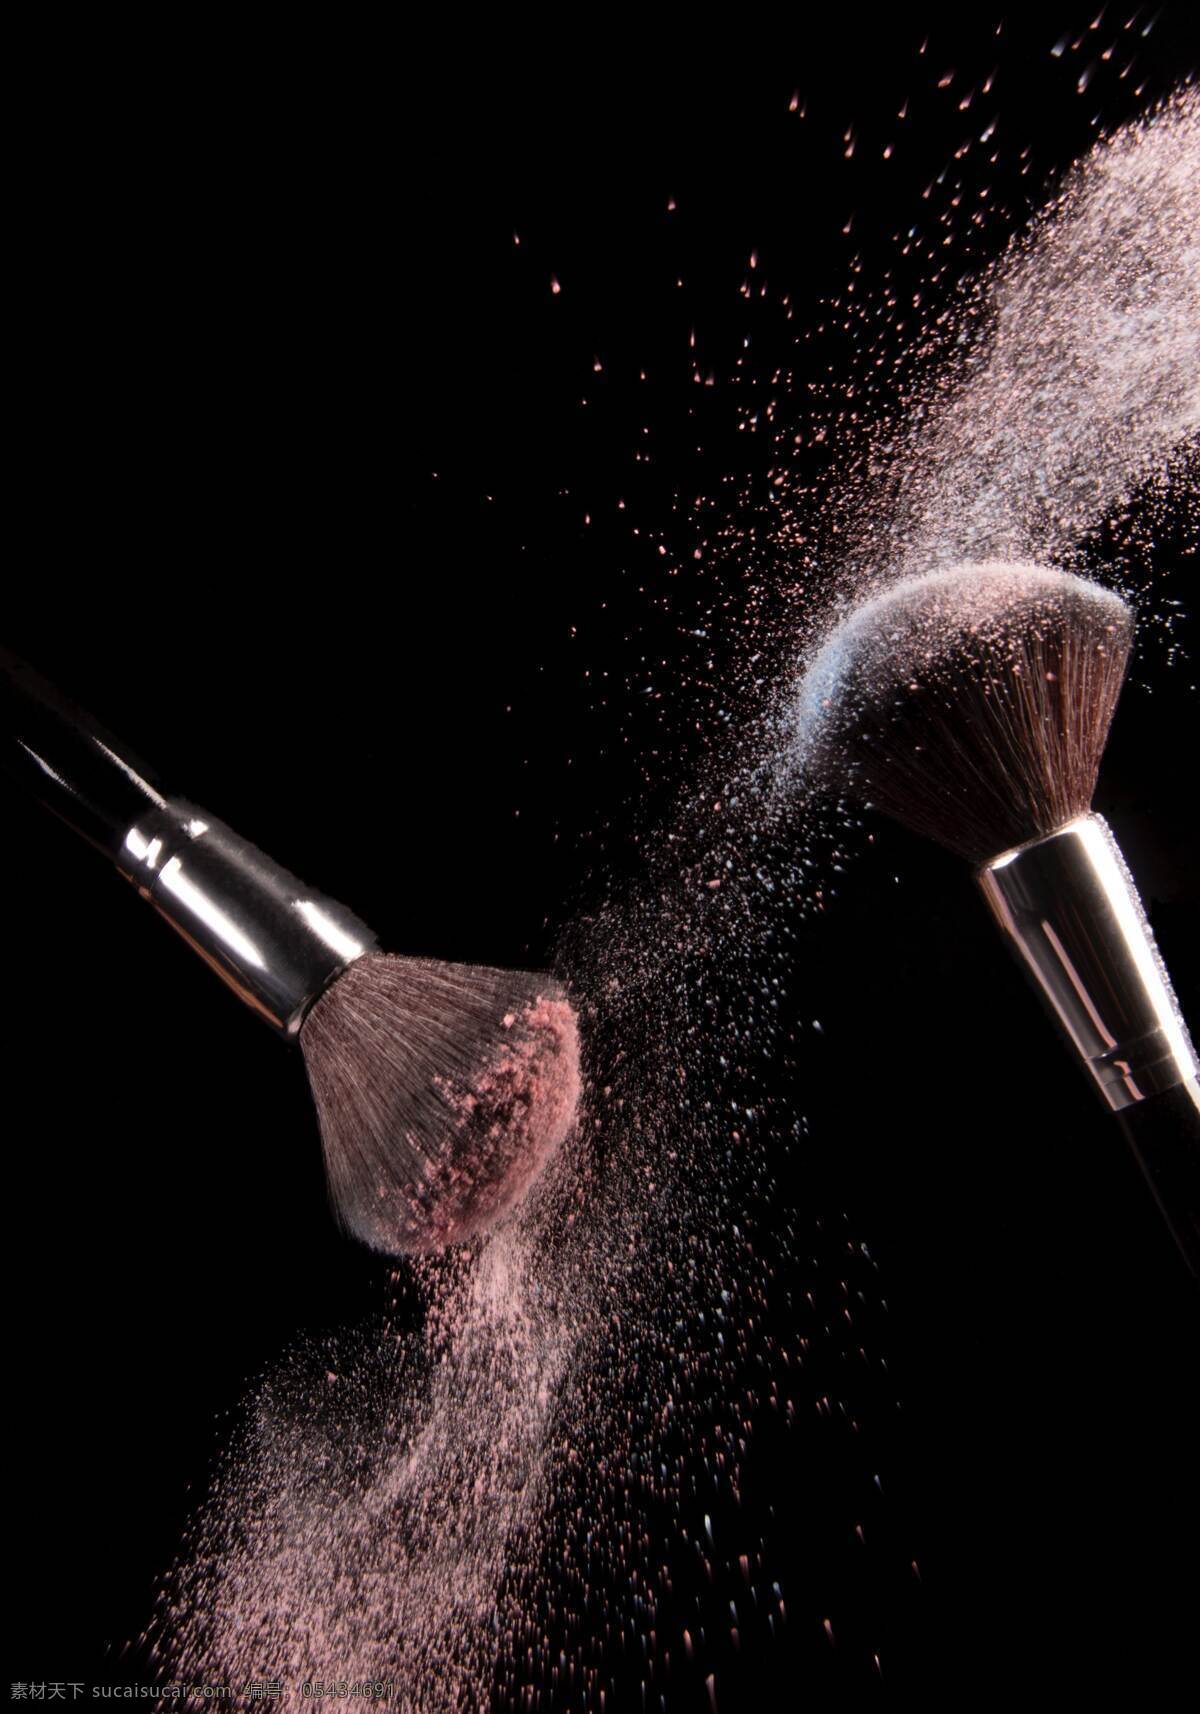 化妆刷 女人 化妆工具 彩妆 粉底 生活百科 生活素材